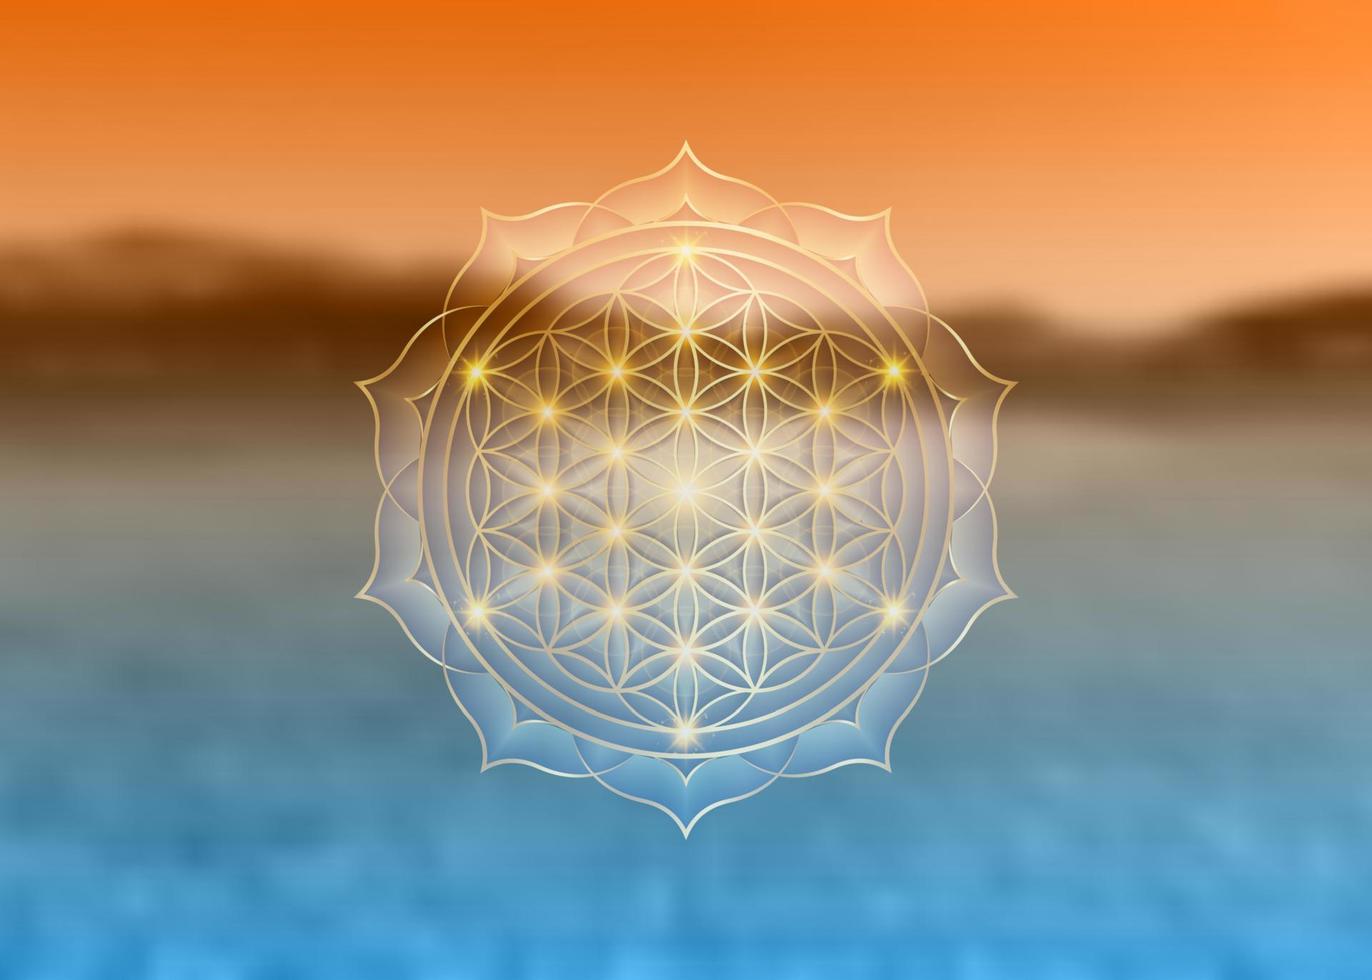 livets blomma, yantra mandala i lotusblomman, helig geometri. logotyp symbol för harmoni och balans, glödande geometrisk prydnad, yoga relax, vektor isolerad på suddig solnedgång naturlig bakgrund